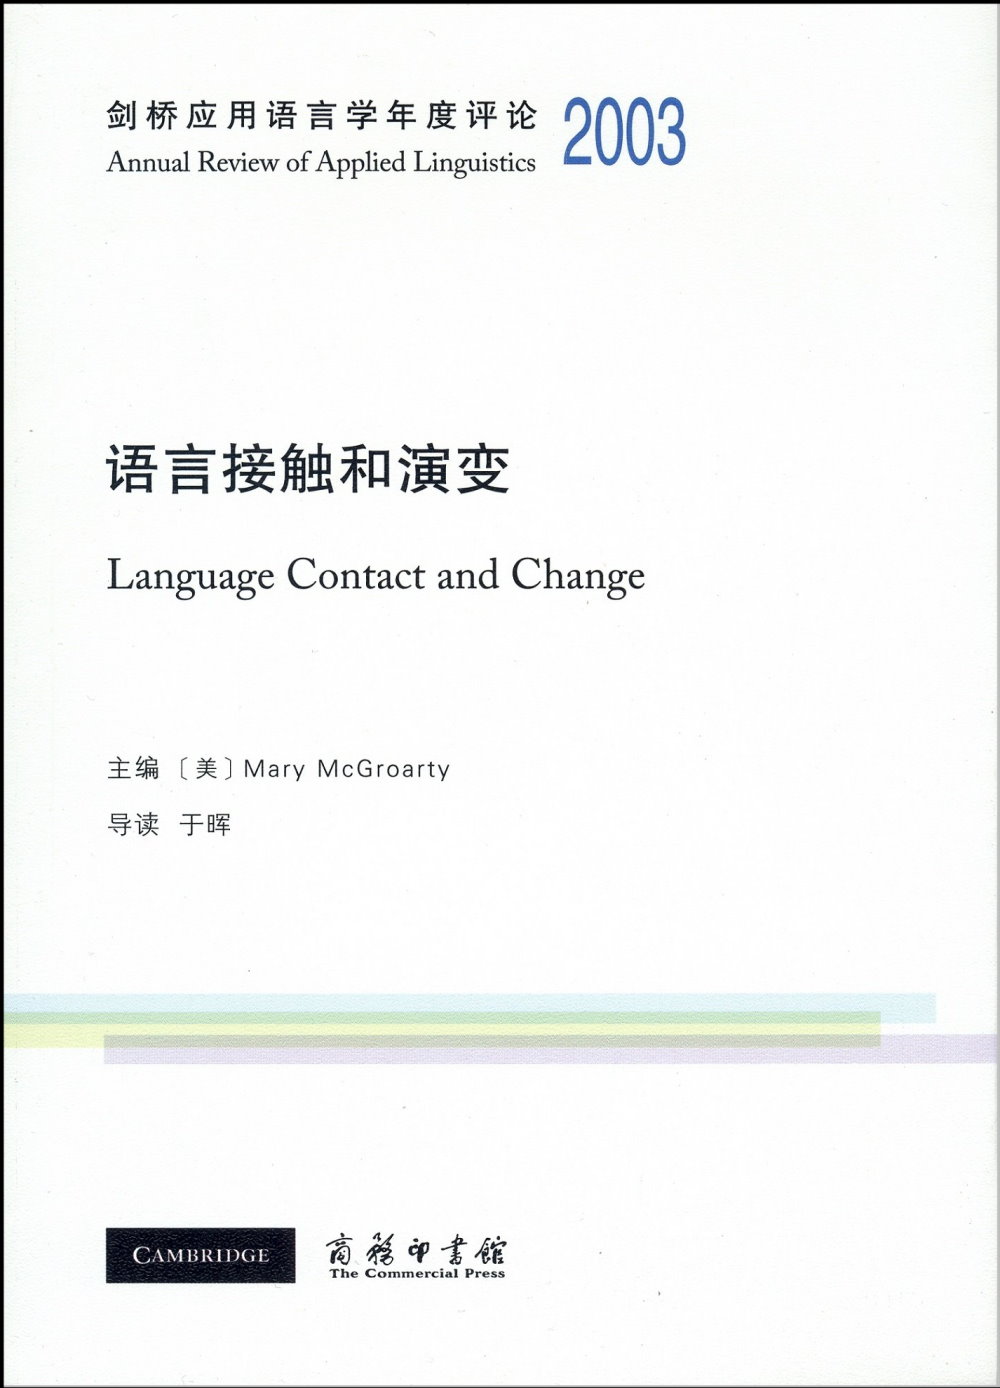 劍橋應用語言學年度評論2003 ·語言接觸和演變